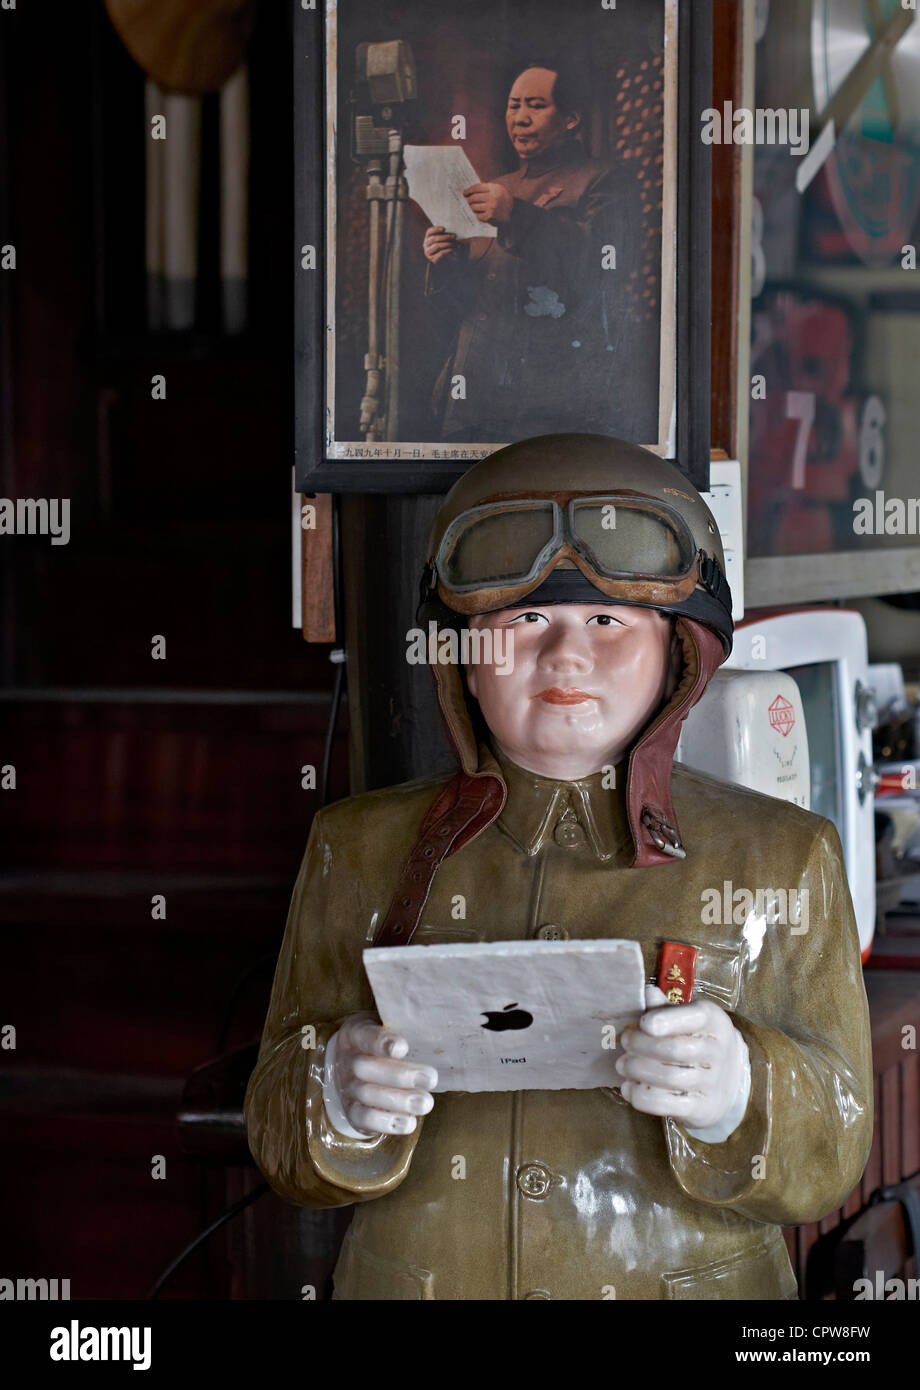 Une statue amusante et une image équivalente appropriée de Mao Tse Tung Zedong se rendant apparemment sur la voie de l'avenir avec une tablette iPad Banque D'Images